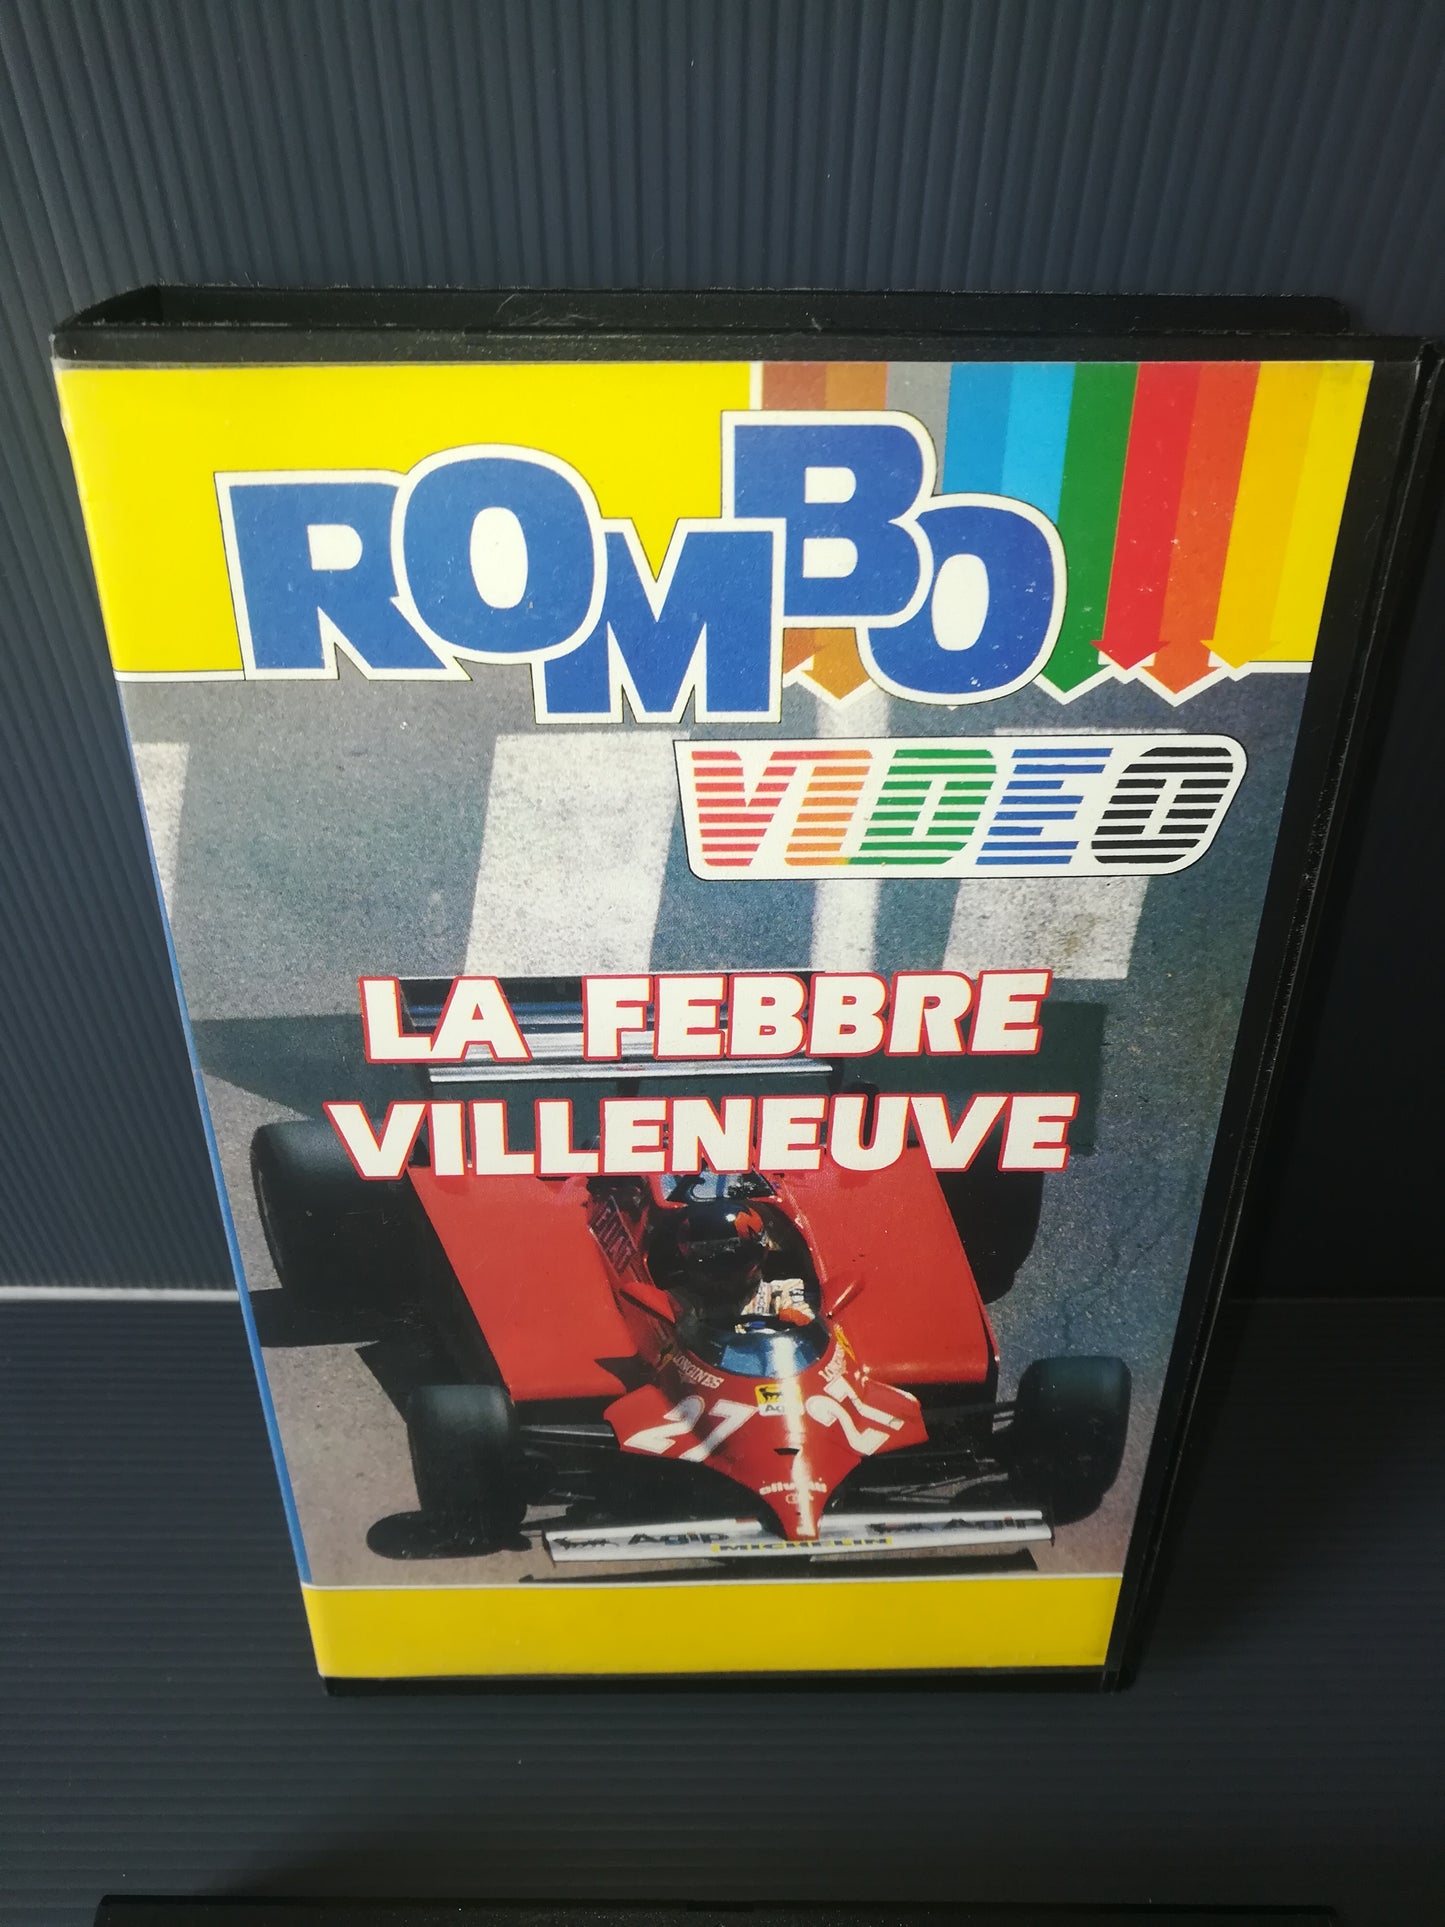 "La Febbre Villeneuve" VHS Rombo Video